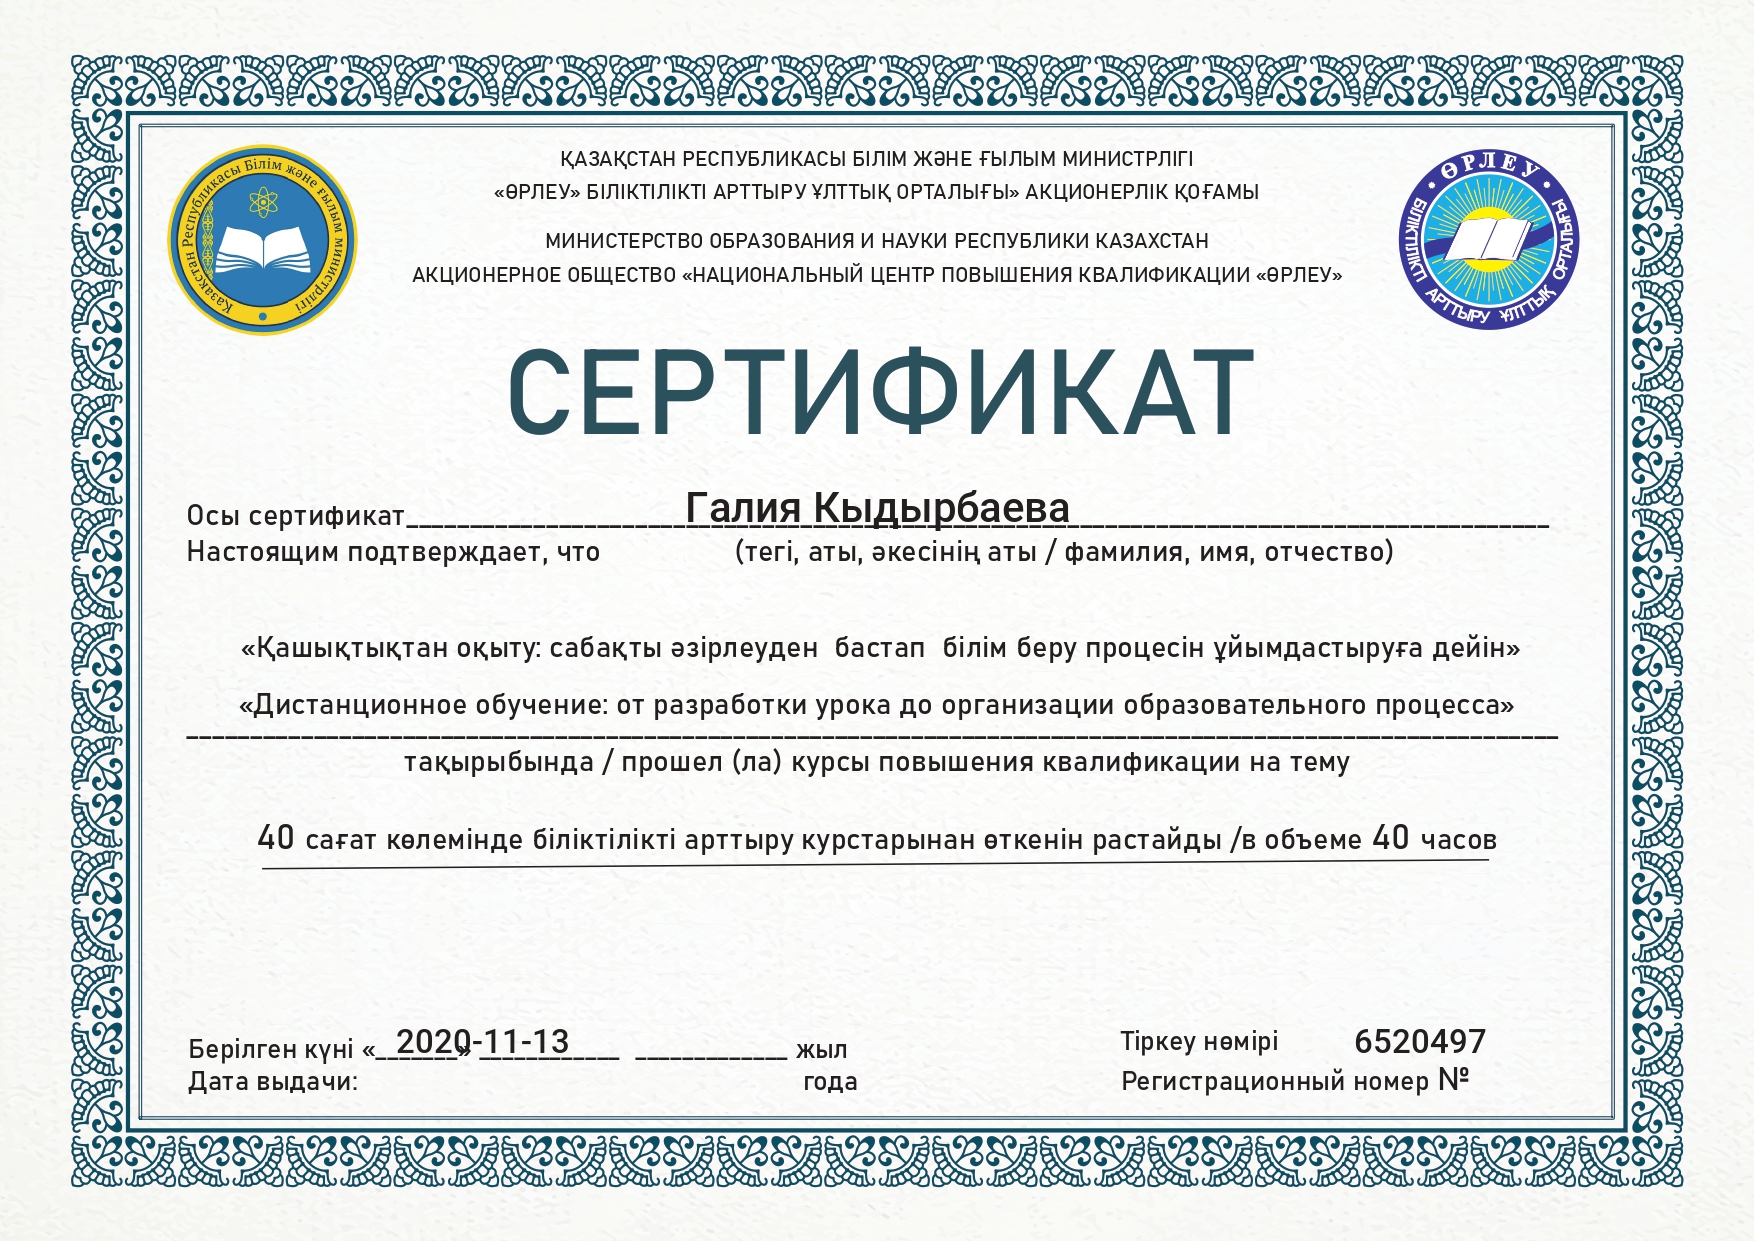 Білім на русском. Сертификат. Сертификат Казахстан. Казахский сертификат. Сертификат на казахском языке.